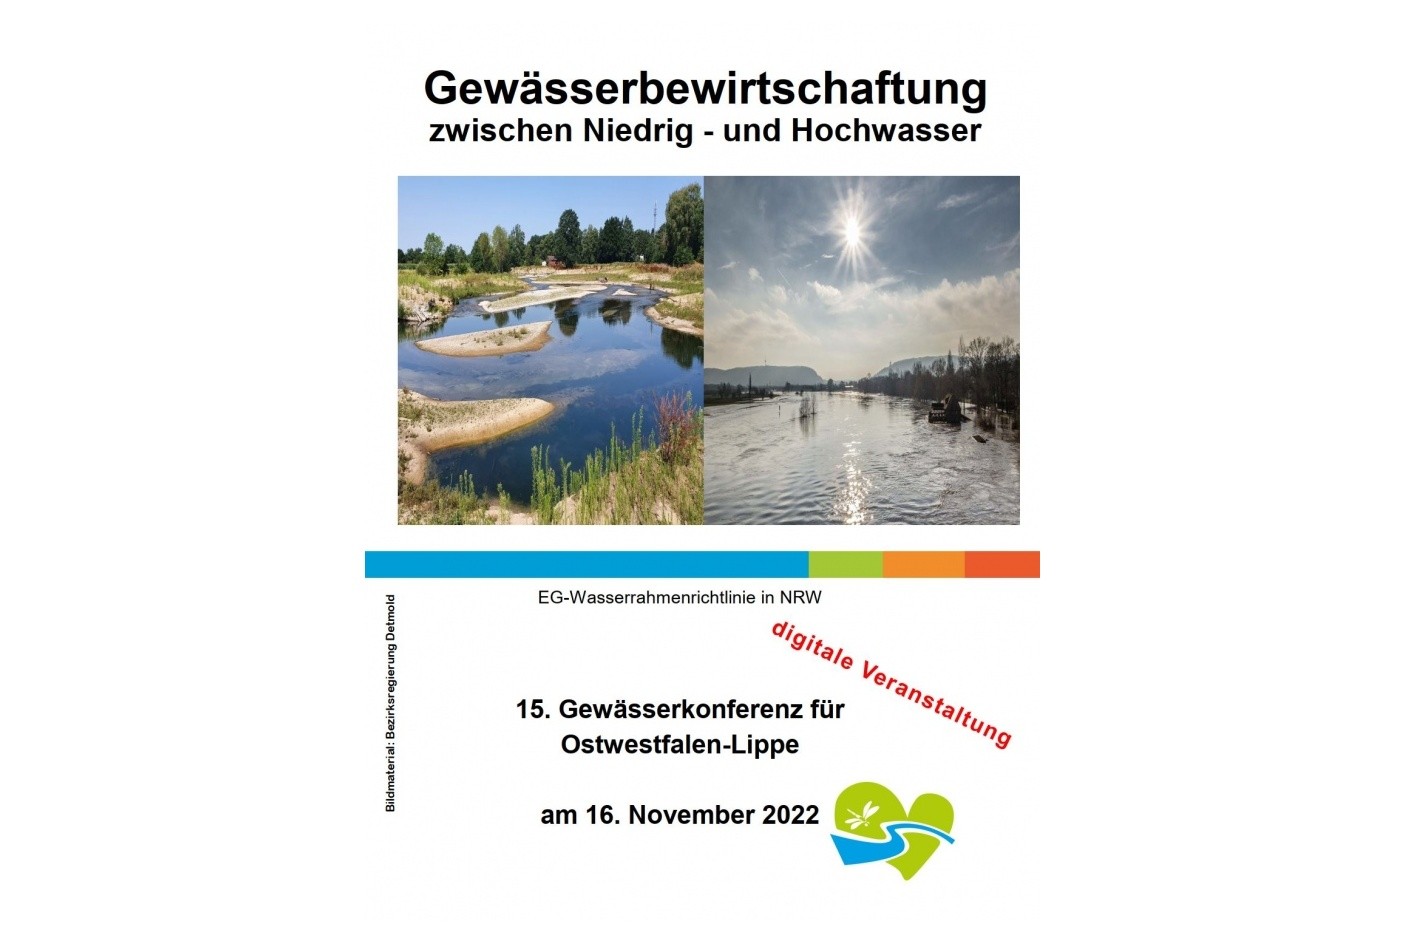 Bezirksregierung lädt zur 15. Gewässerkonferenz am 16.11. ein